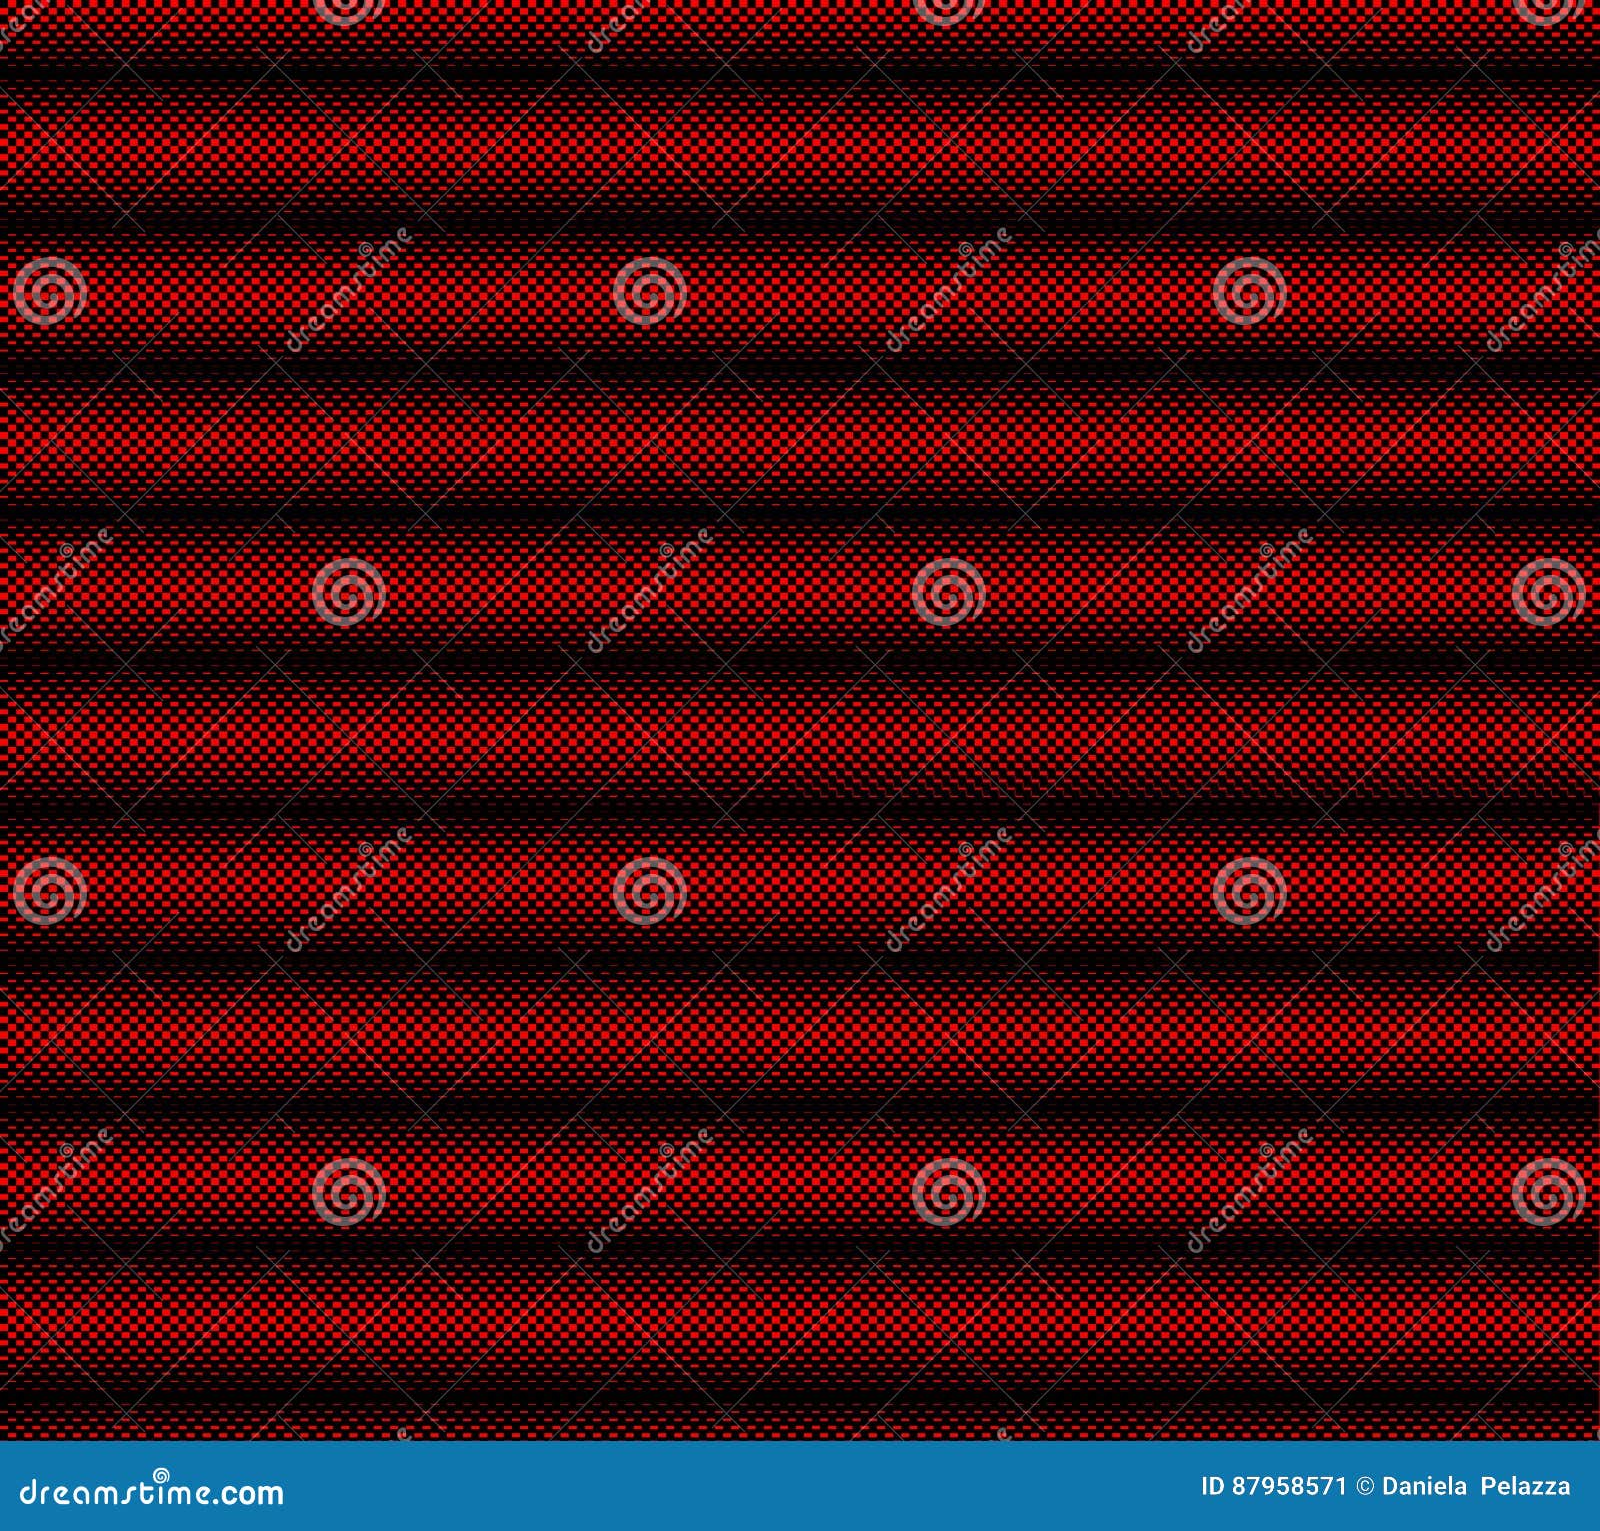 Fundo Vermelho Xadrez Quadriculado Background Imagem [download